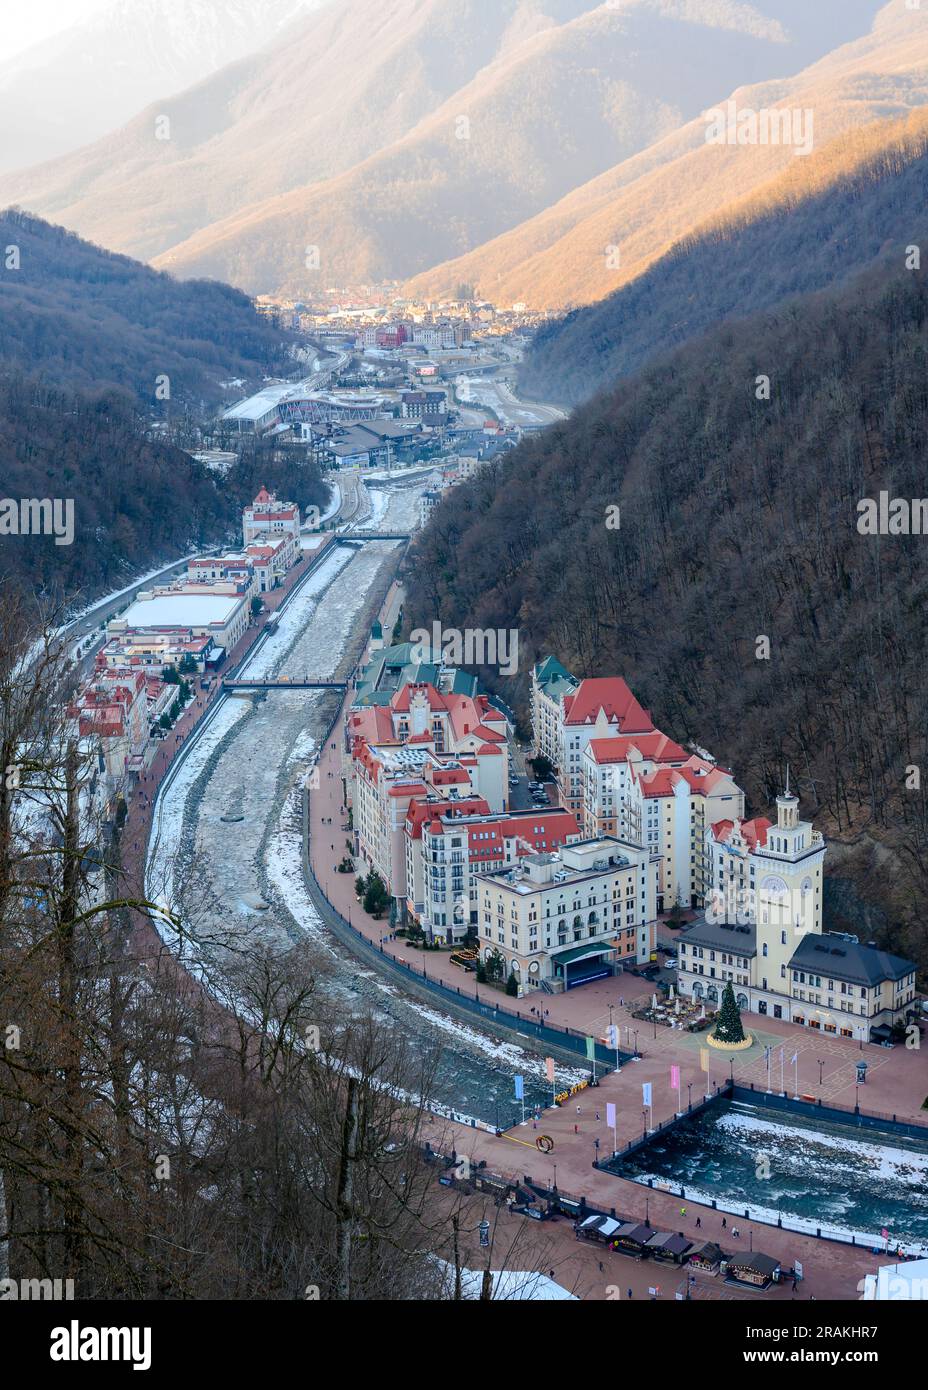 Vista aerea del villaggio di Rosa Khutor, una stazione sciistica situata tra gli speroni delle montagne del Caucaso Foto Stock